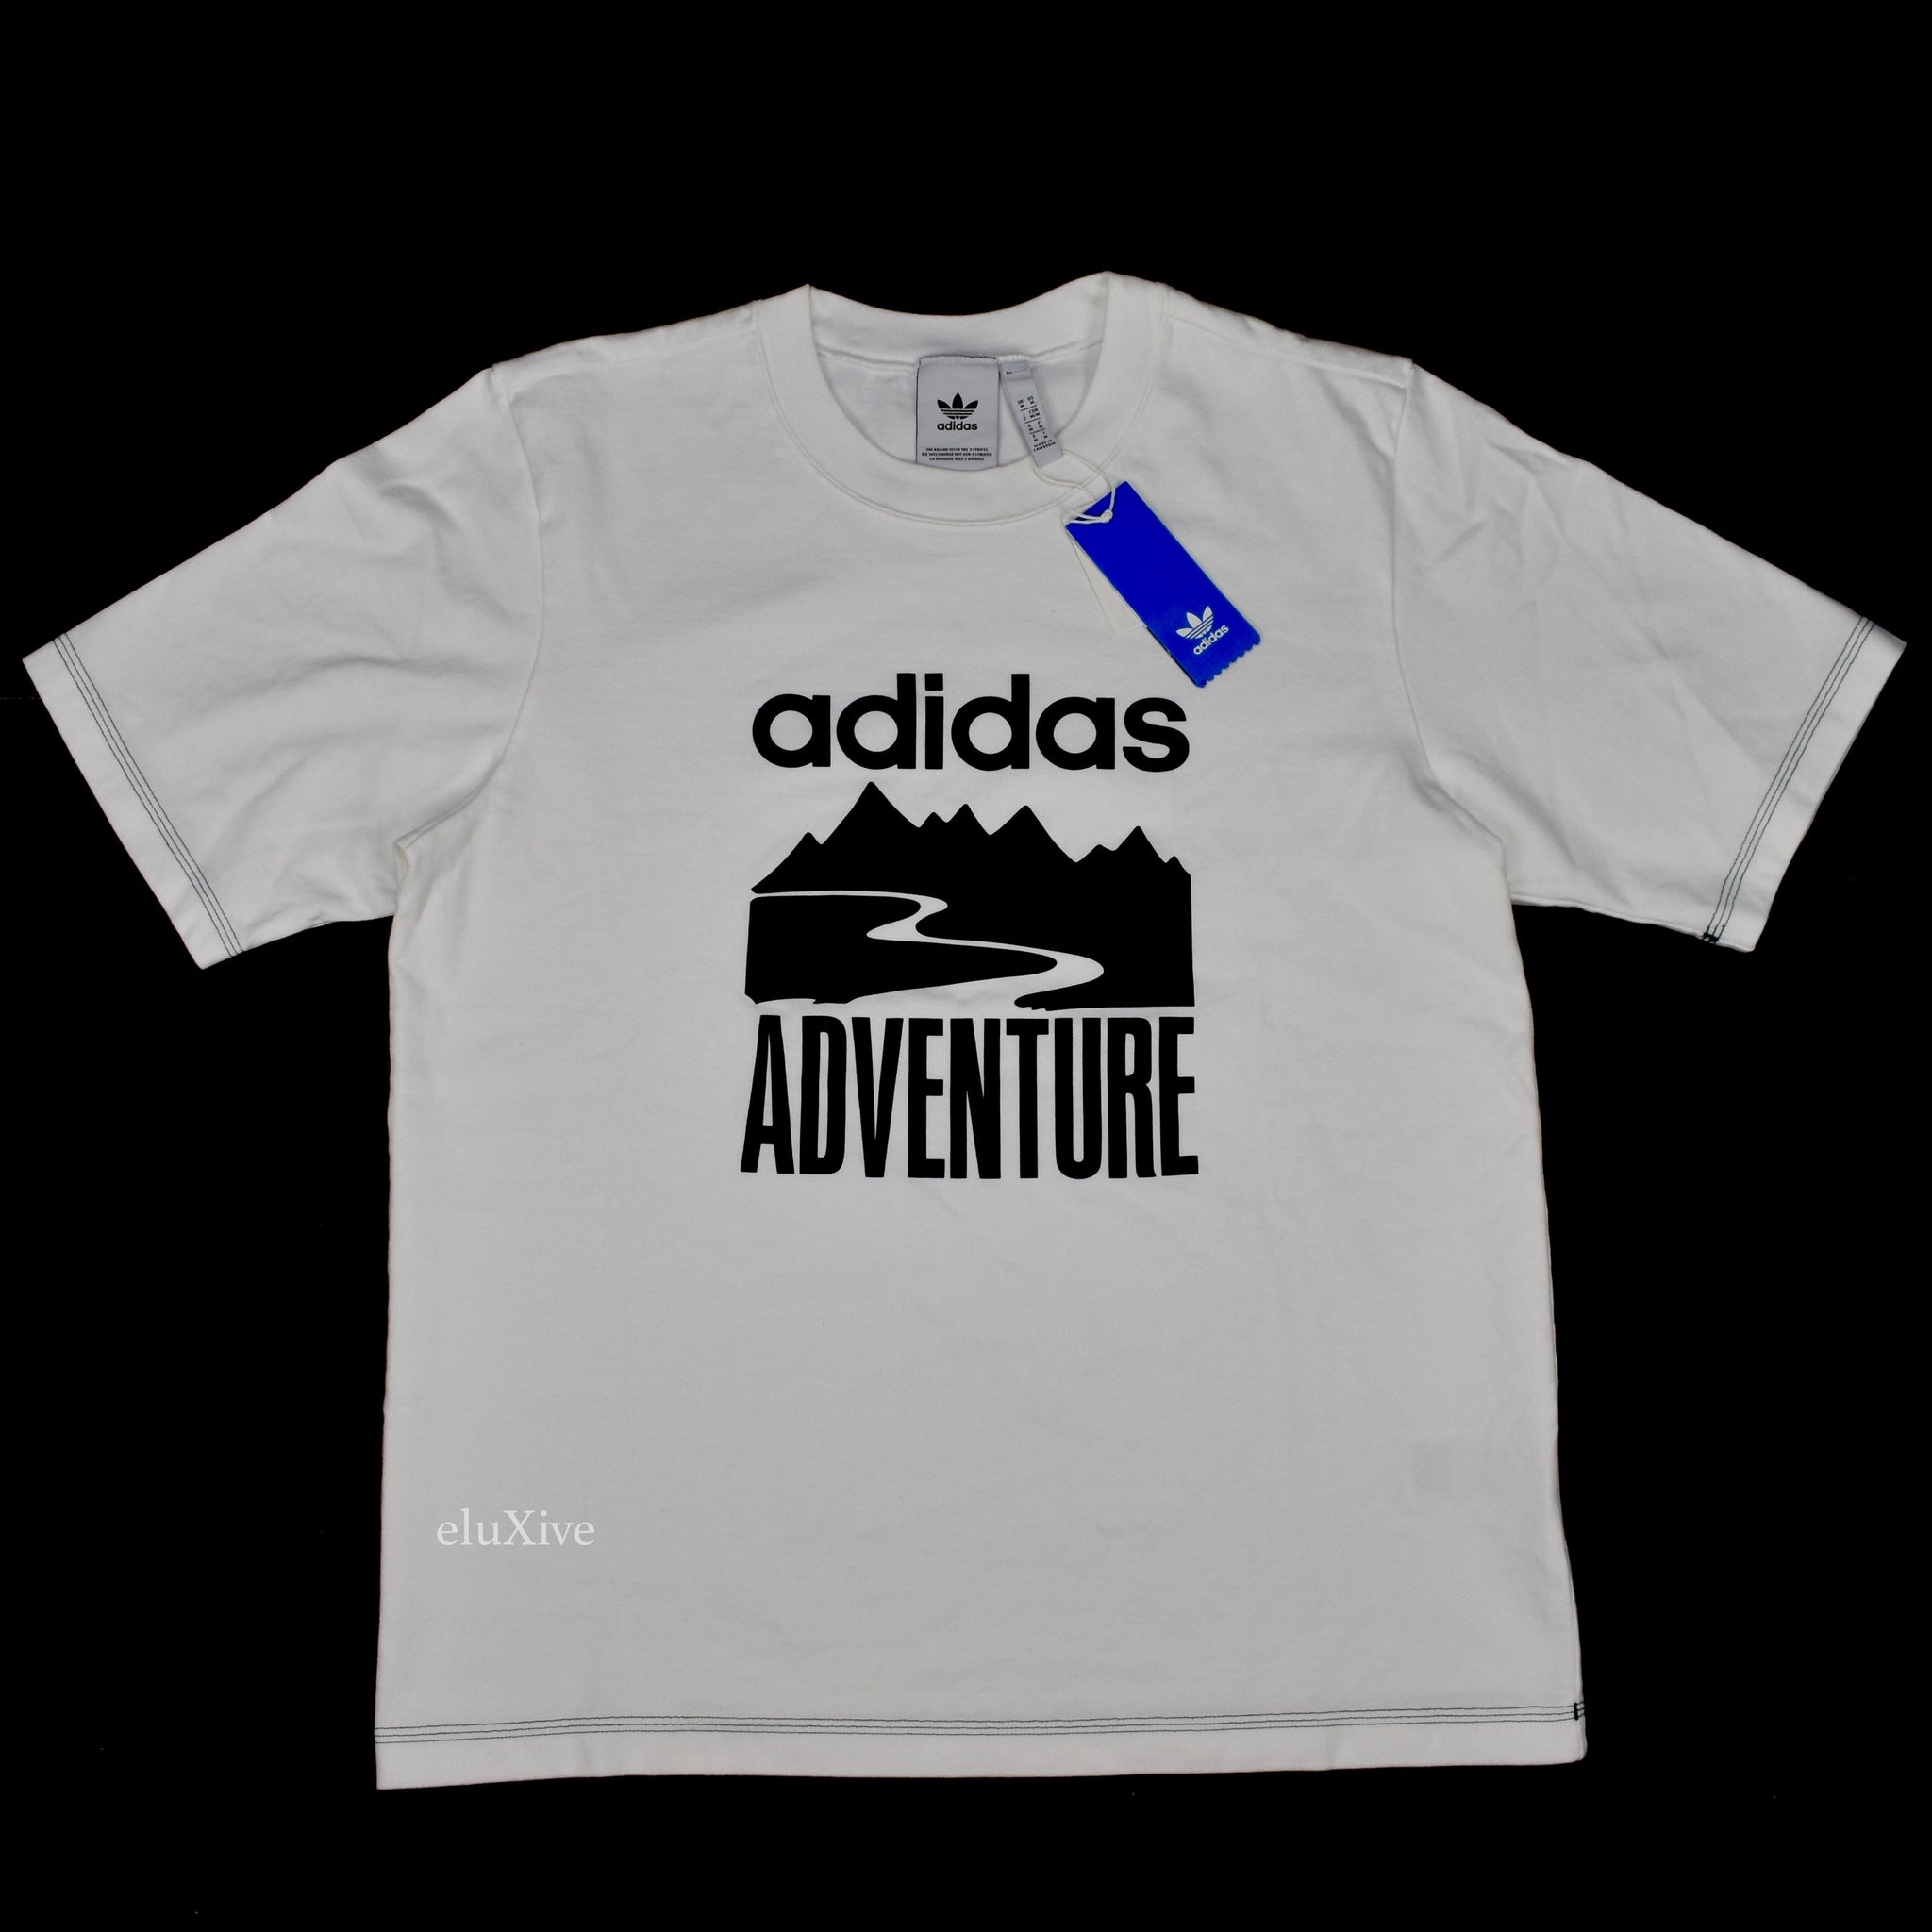 adidas adventure shirt